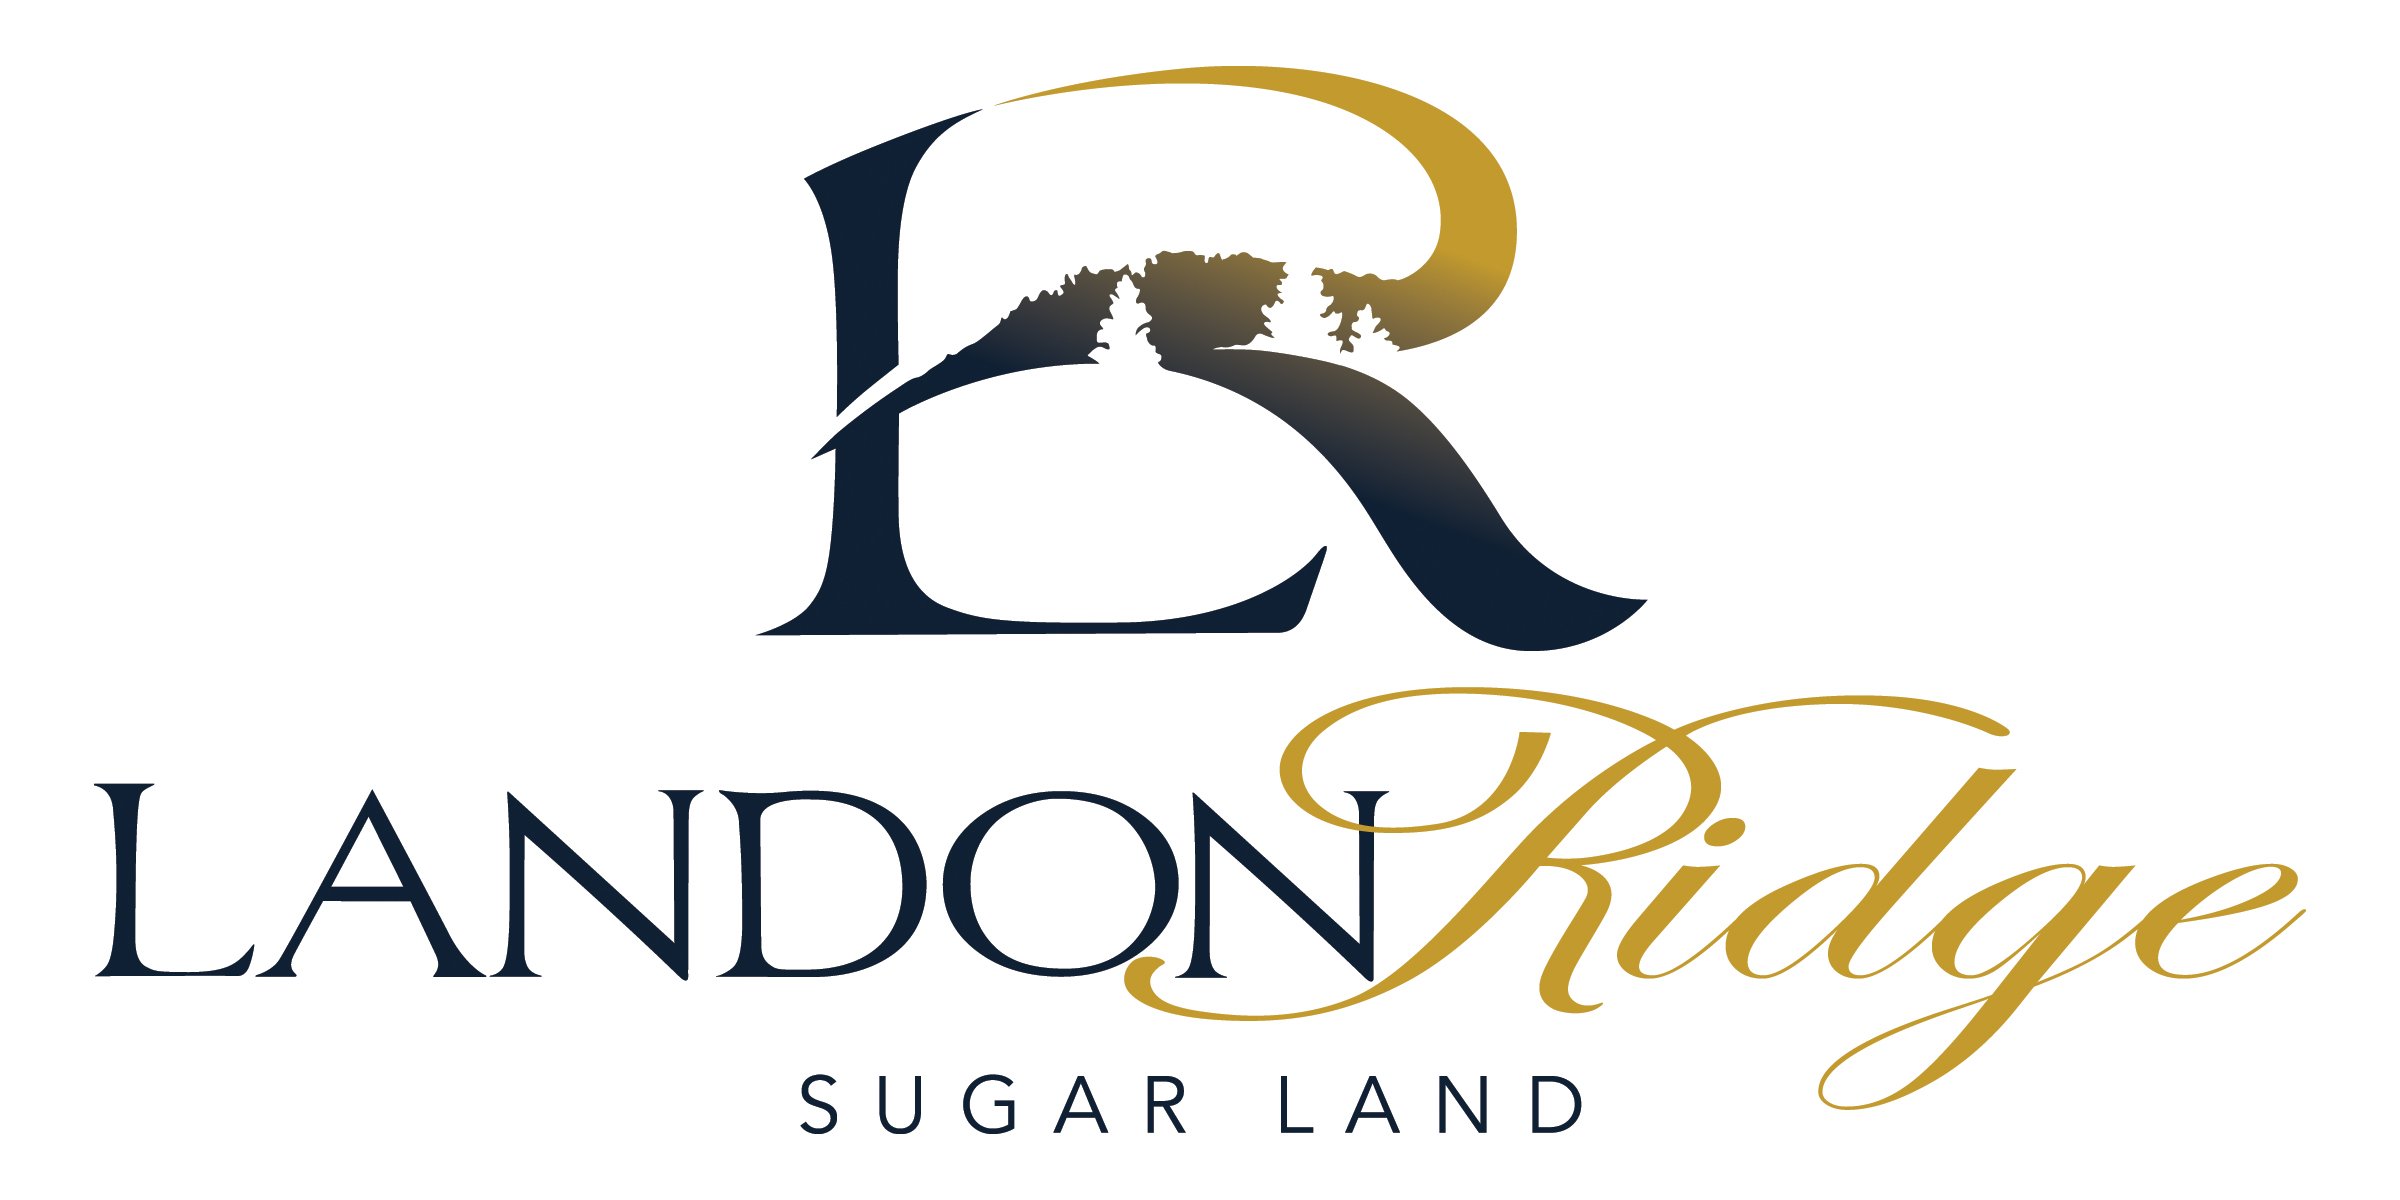 Landon Ridge - Sugar Land logo